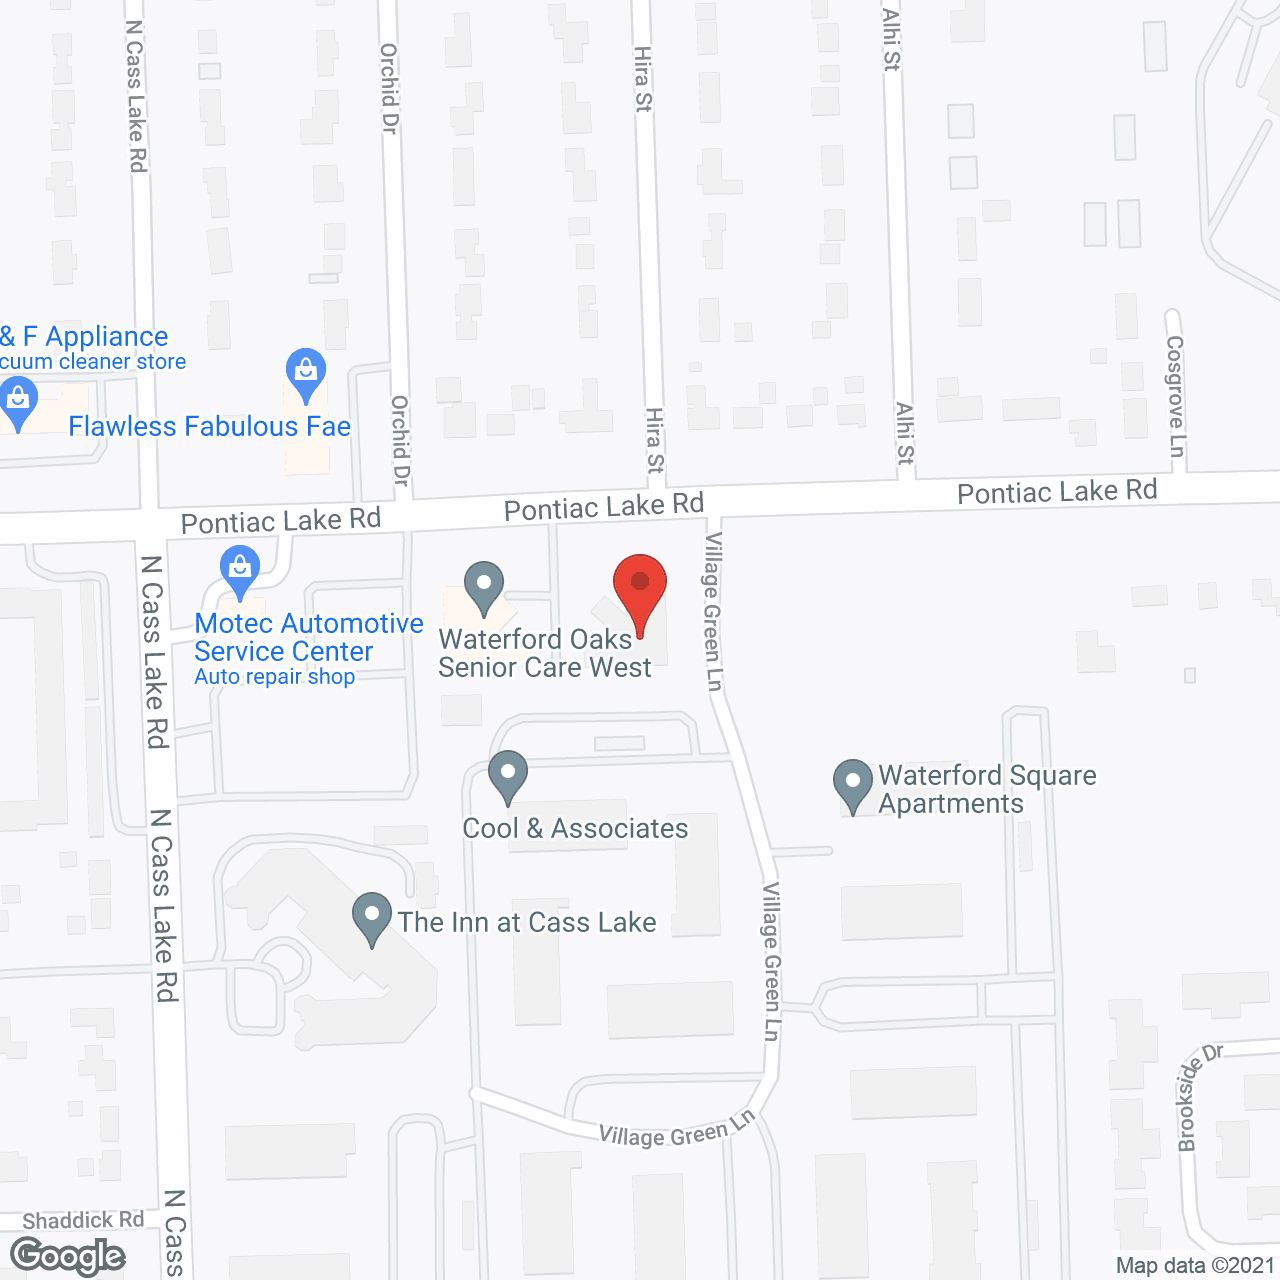 Waterford Oaks Senior Center in google map